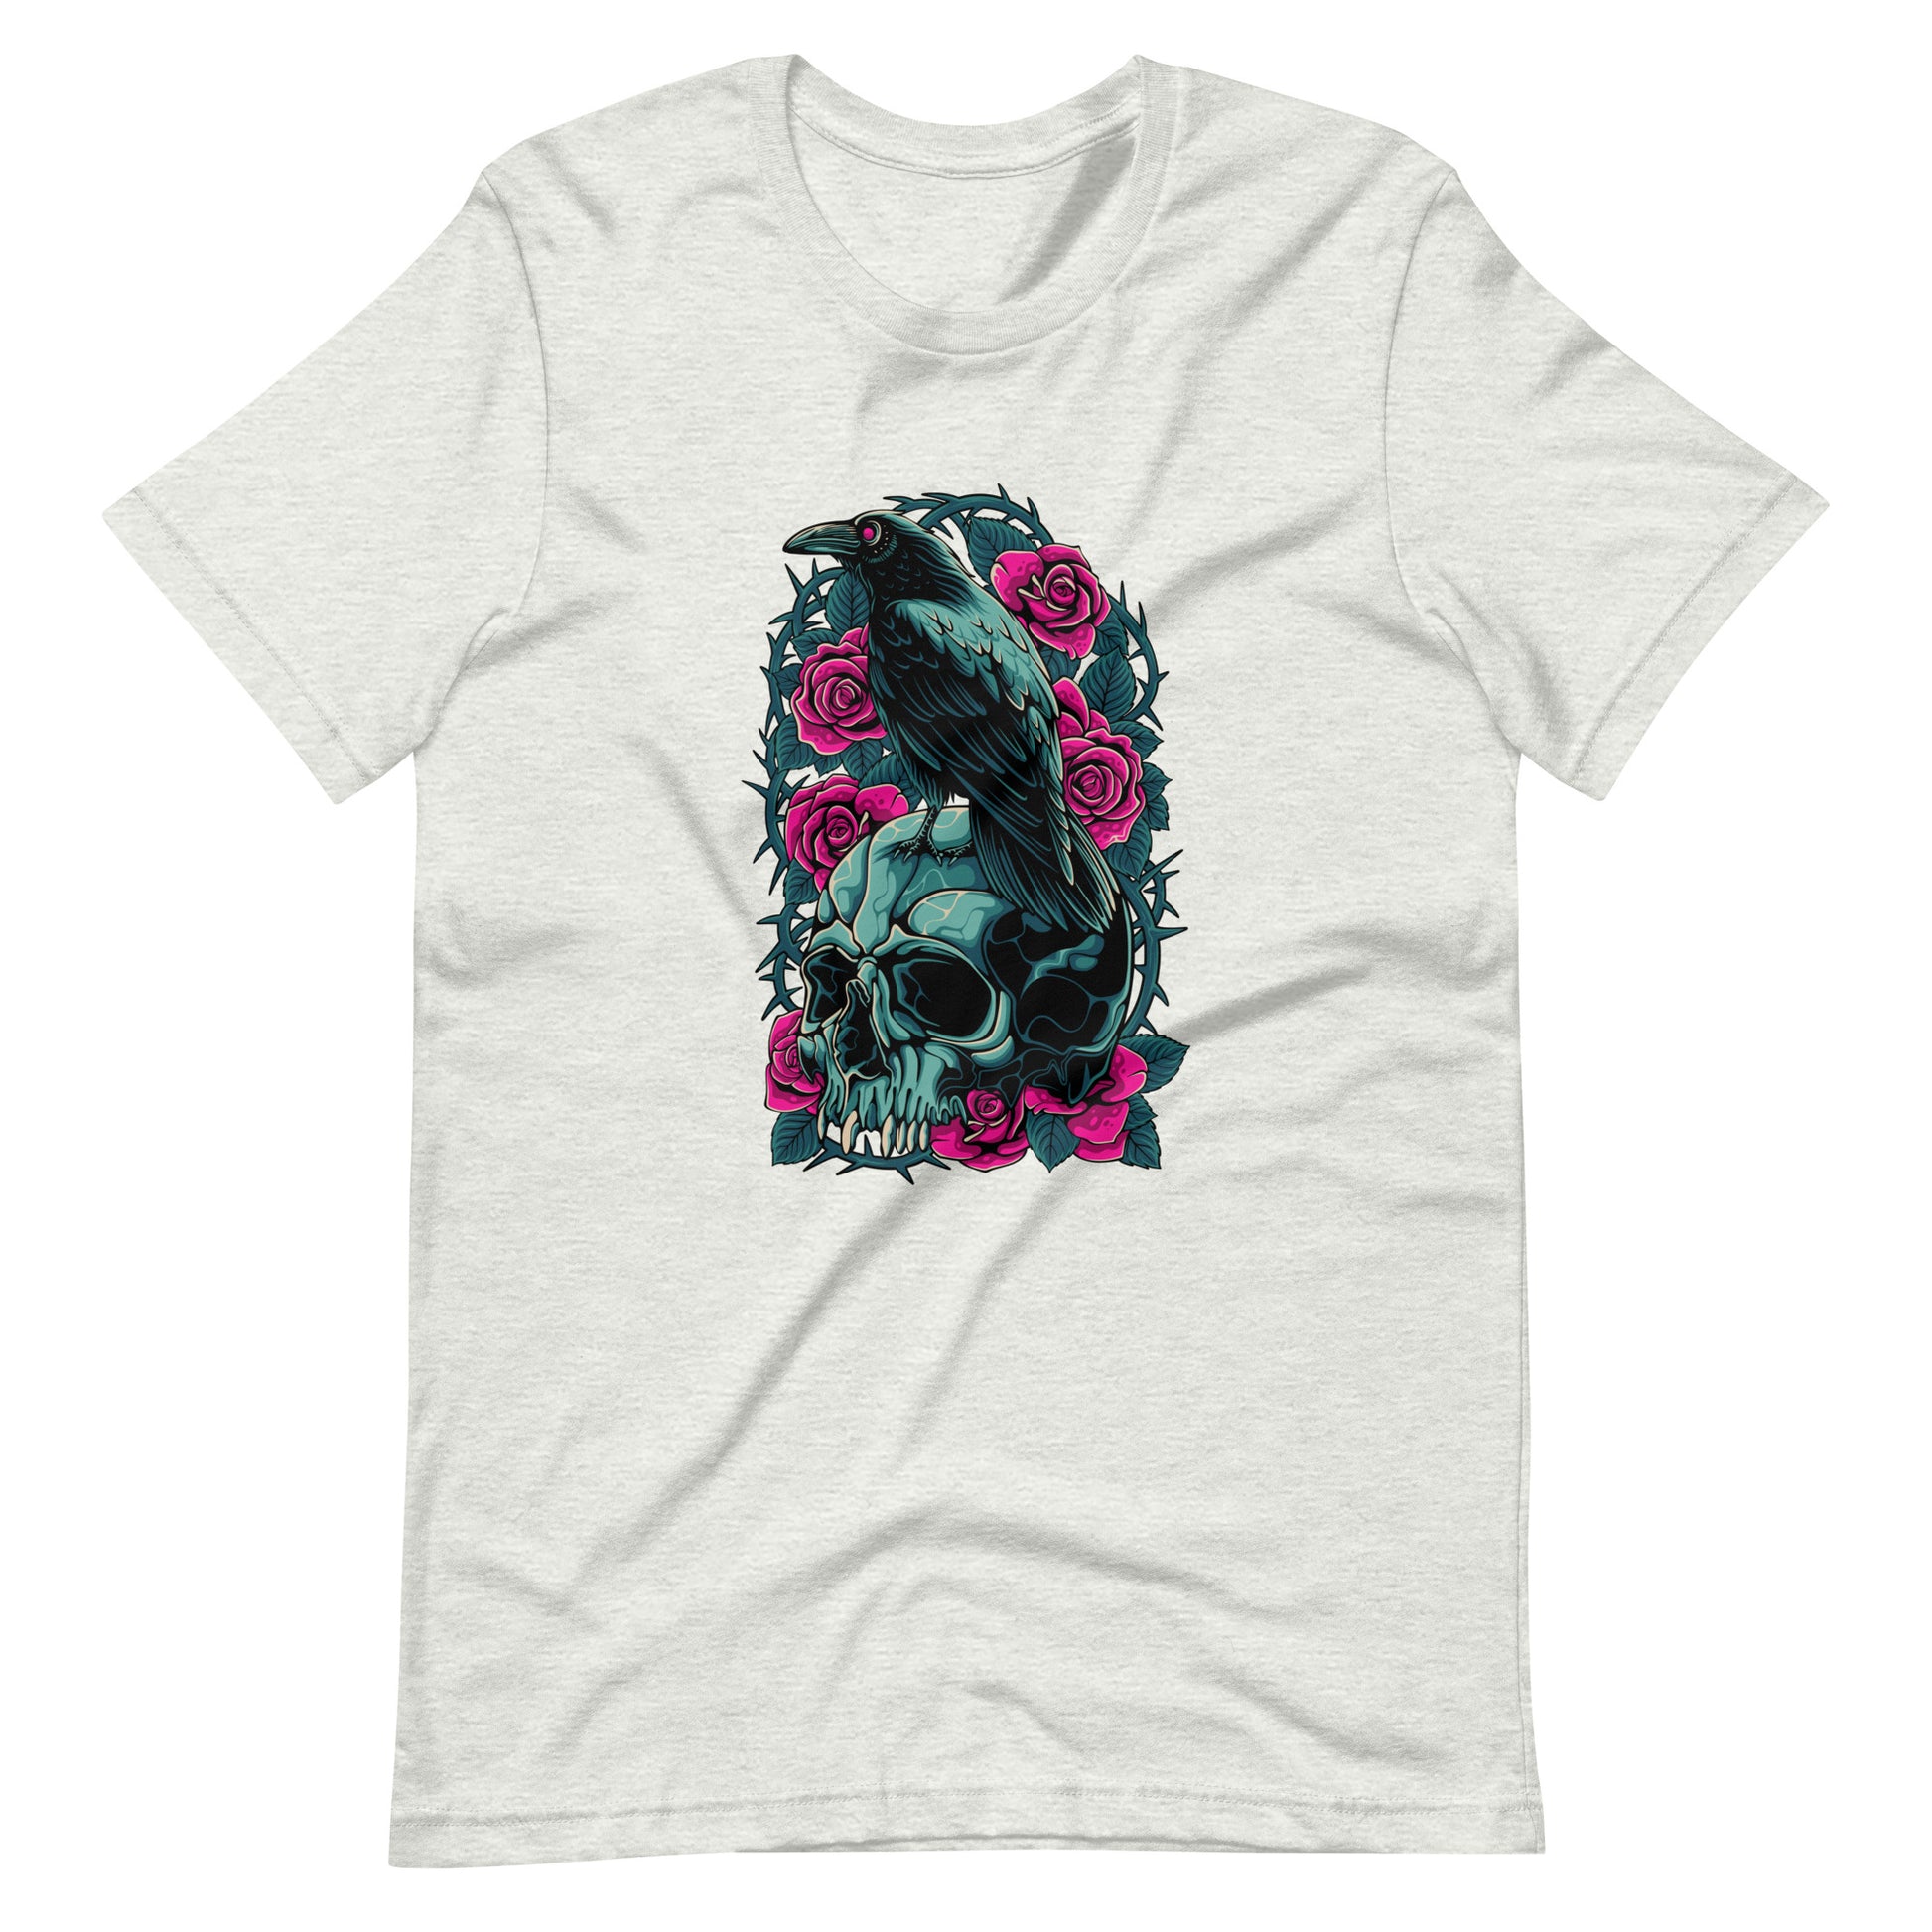 The Raven's Crypt Raven on Skull - Men's t-shirt Ash Front